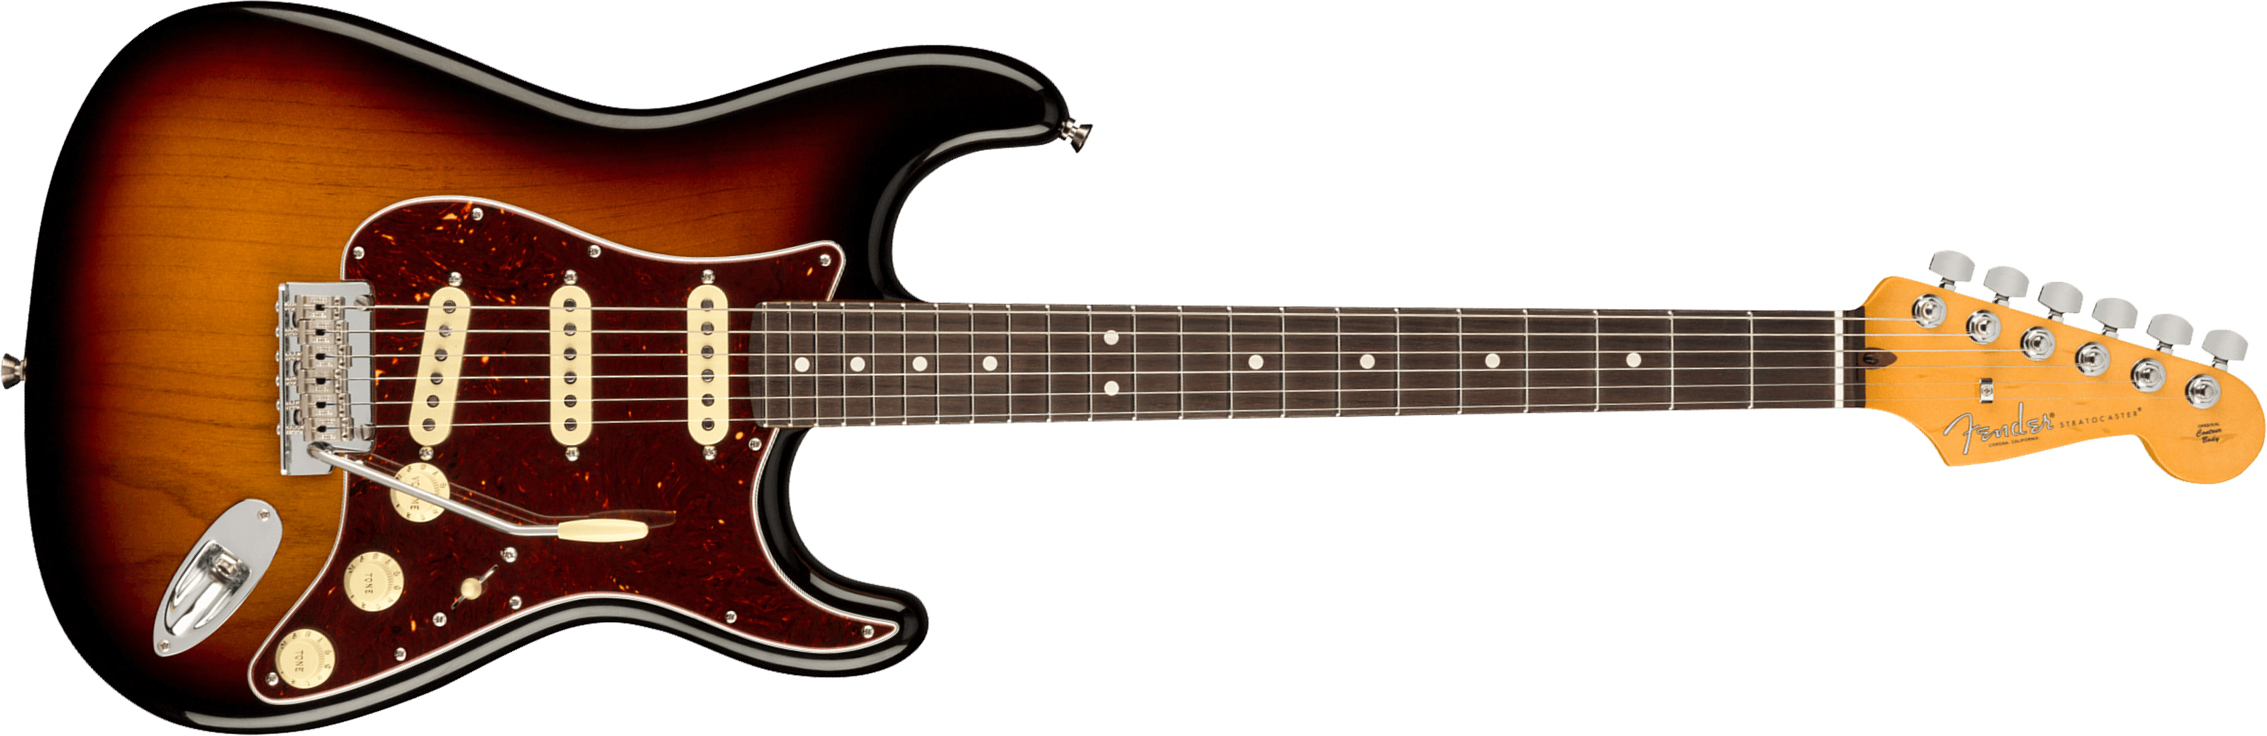 Fender Strat American Professional Ii Usa Rw - 3-color Sunburst - E-Gitarre in Str-Form - Main picture